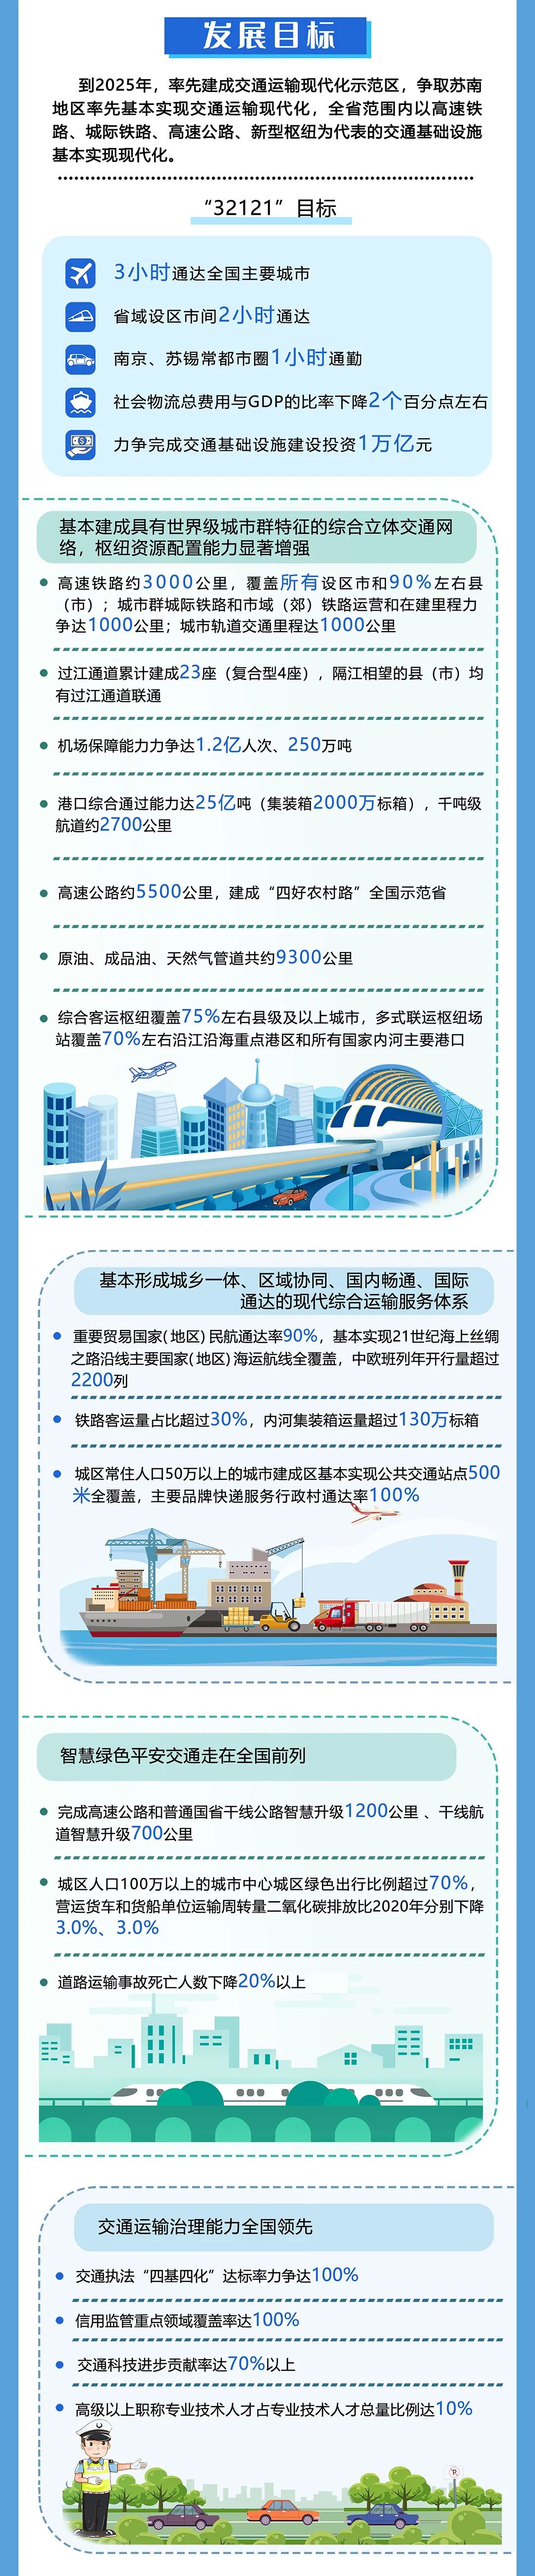 江苏：2025年，城市轨道交通里程达1000公里，城际/市域铁路通车和在建里程力争达1000公里(图6)